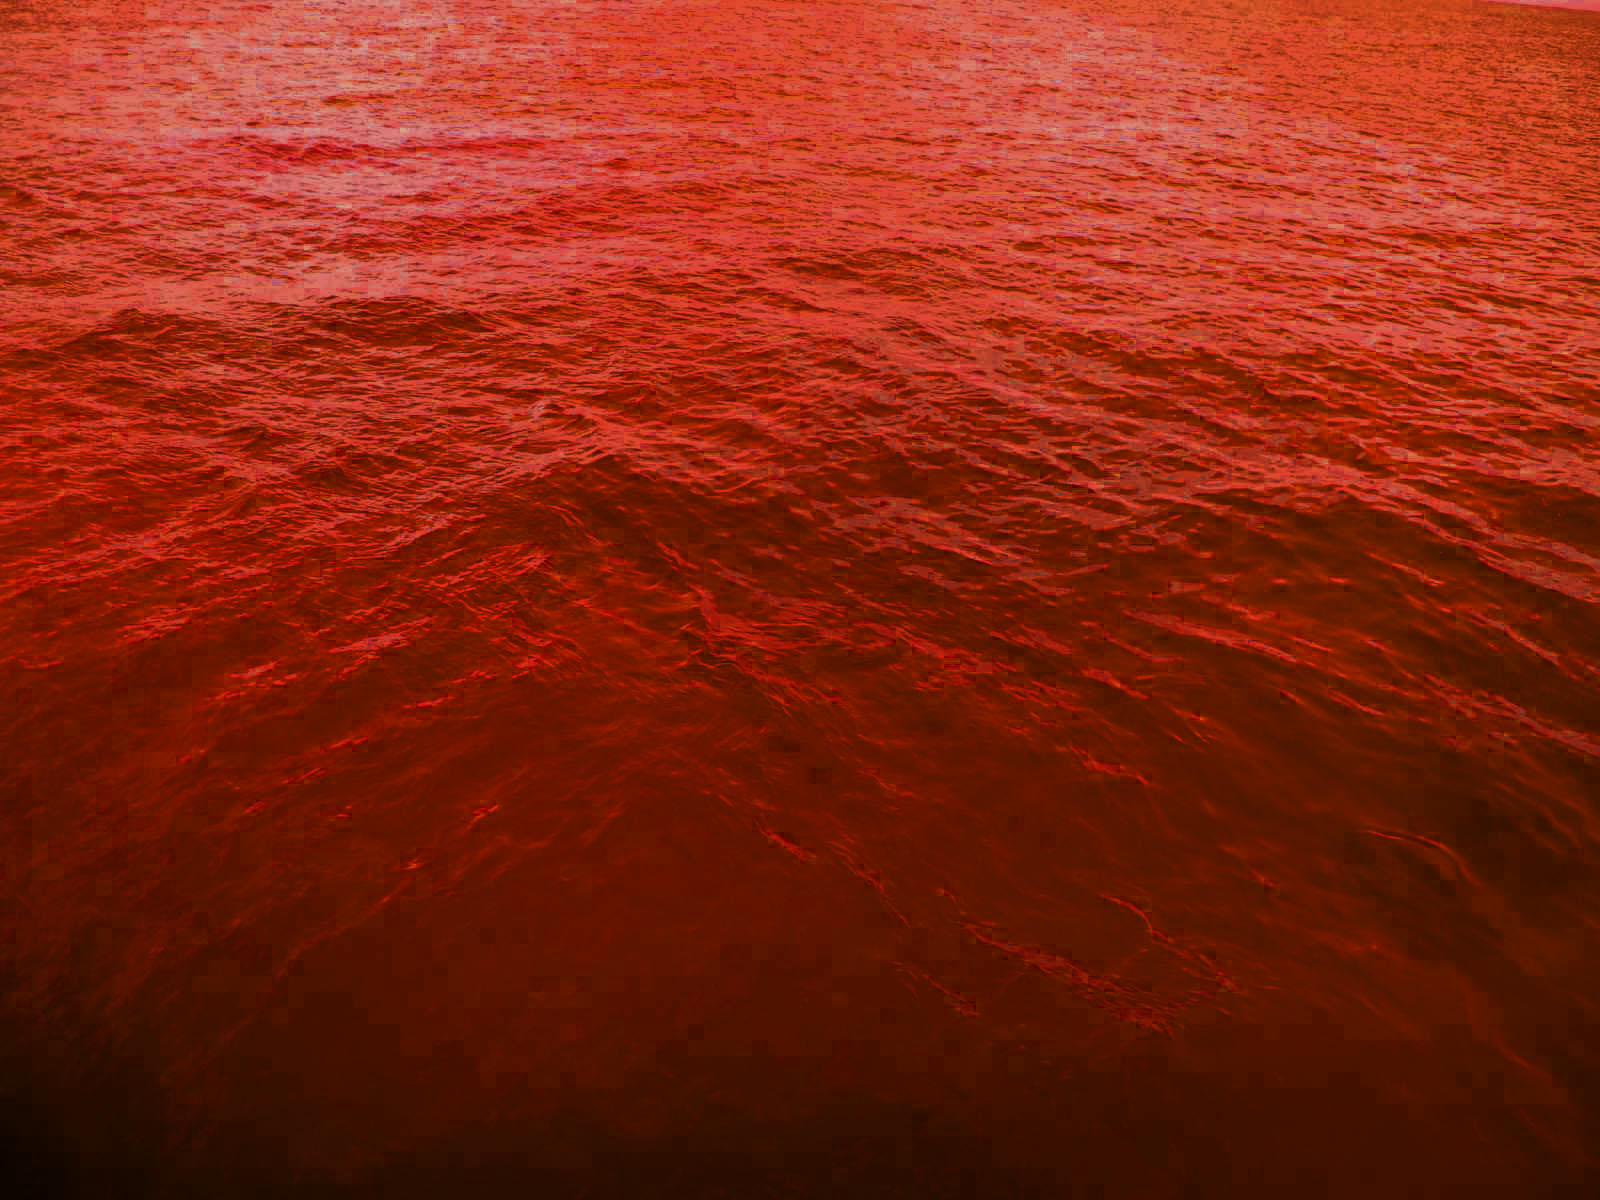 Море красного цвета